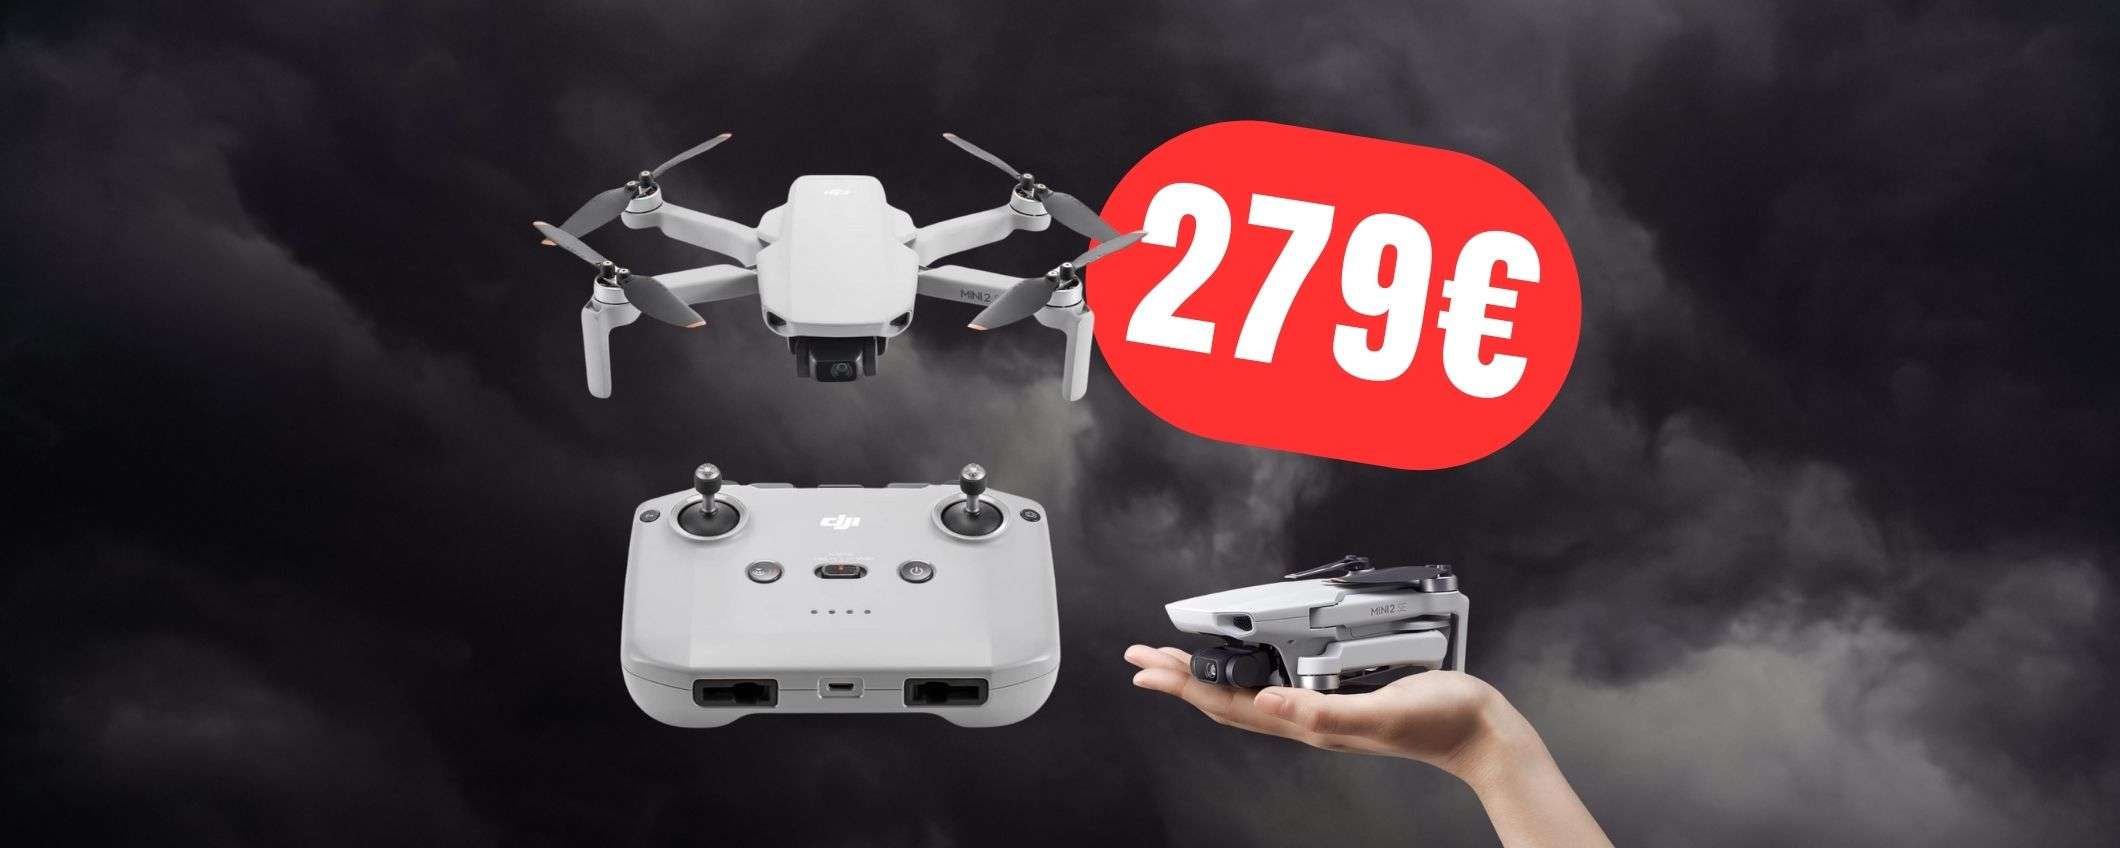 Vola sulla tua città (e senza patentino) con il drone DJI a 279€!